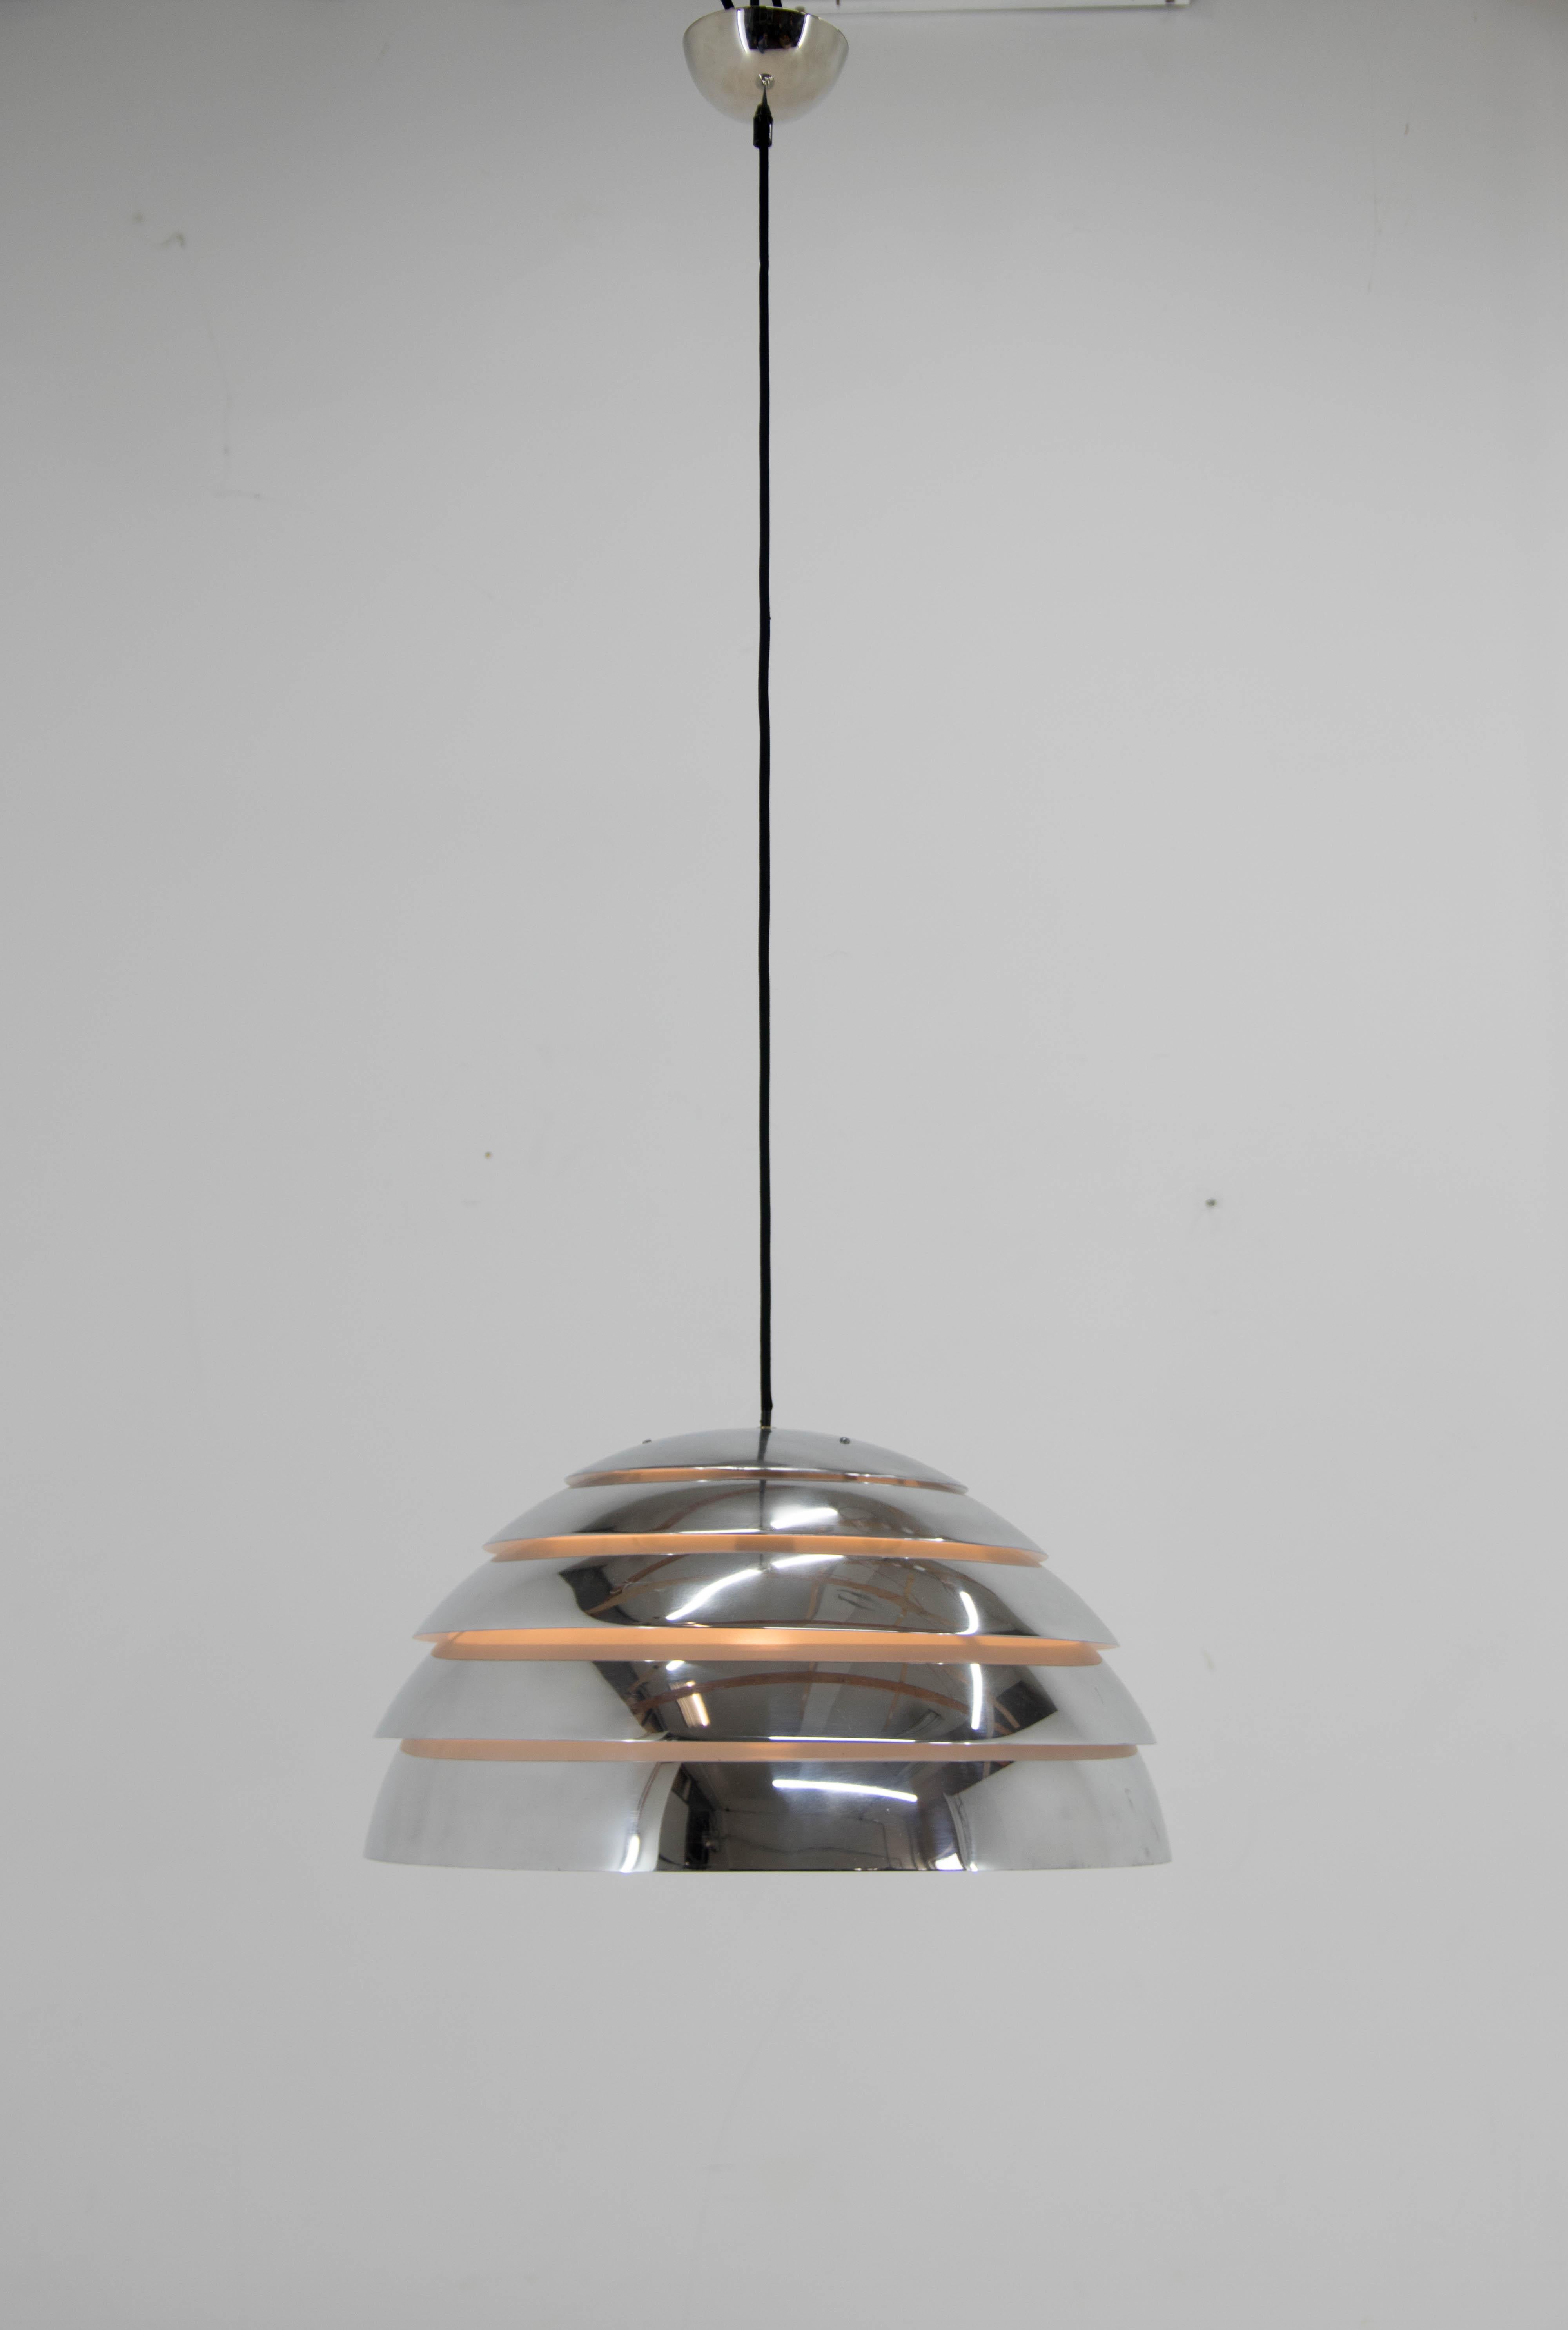 Lampe suspendue conçue par Hans-Agne Jakobsson pour la société suédoise AB Markaryd.
Très bon état, aluminium poli, nouvelle peinture blanche à l'intérieur.
Recâblé.
1x60W, ampoule E25-E27.
Compatible avec le câblage américain.